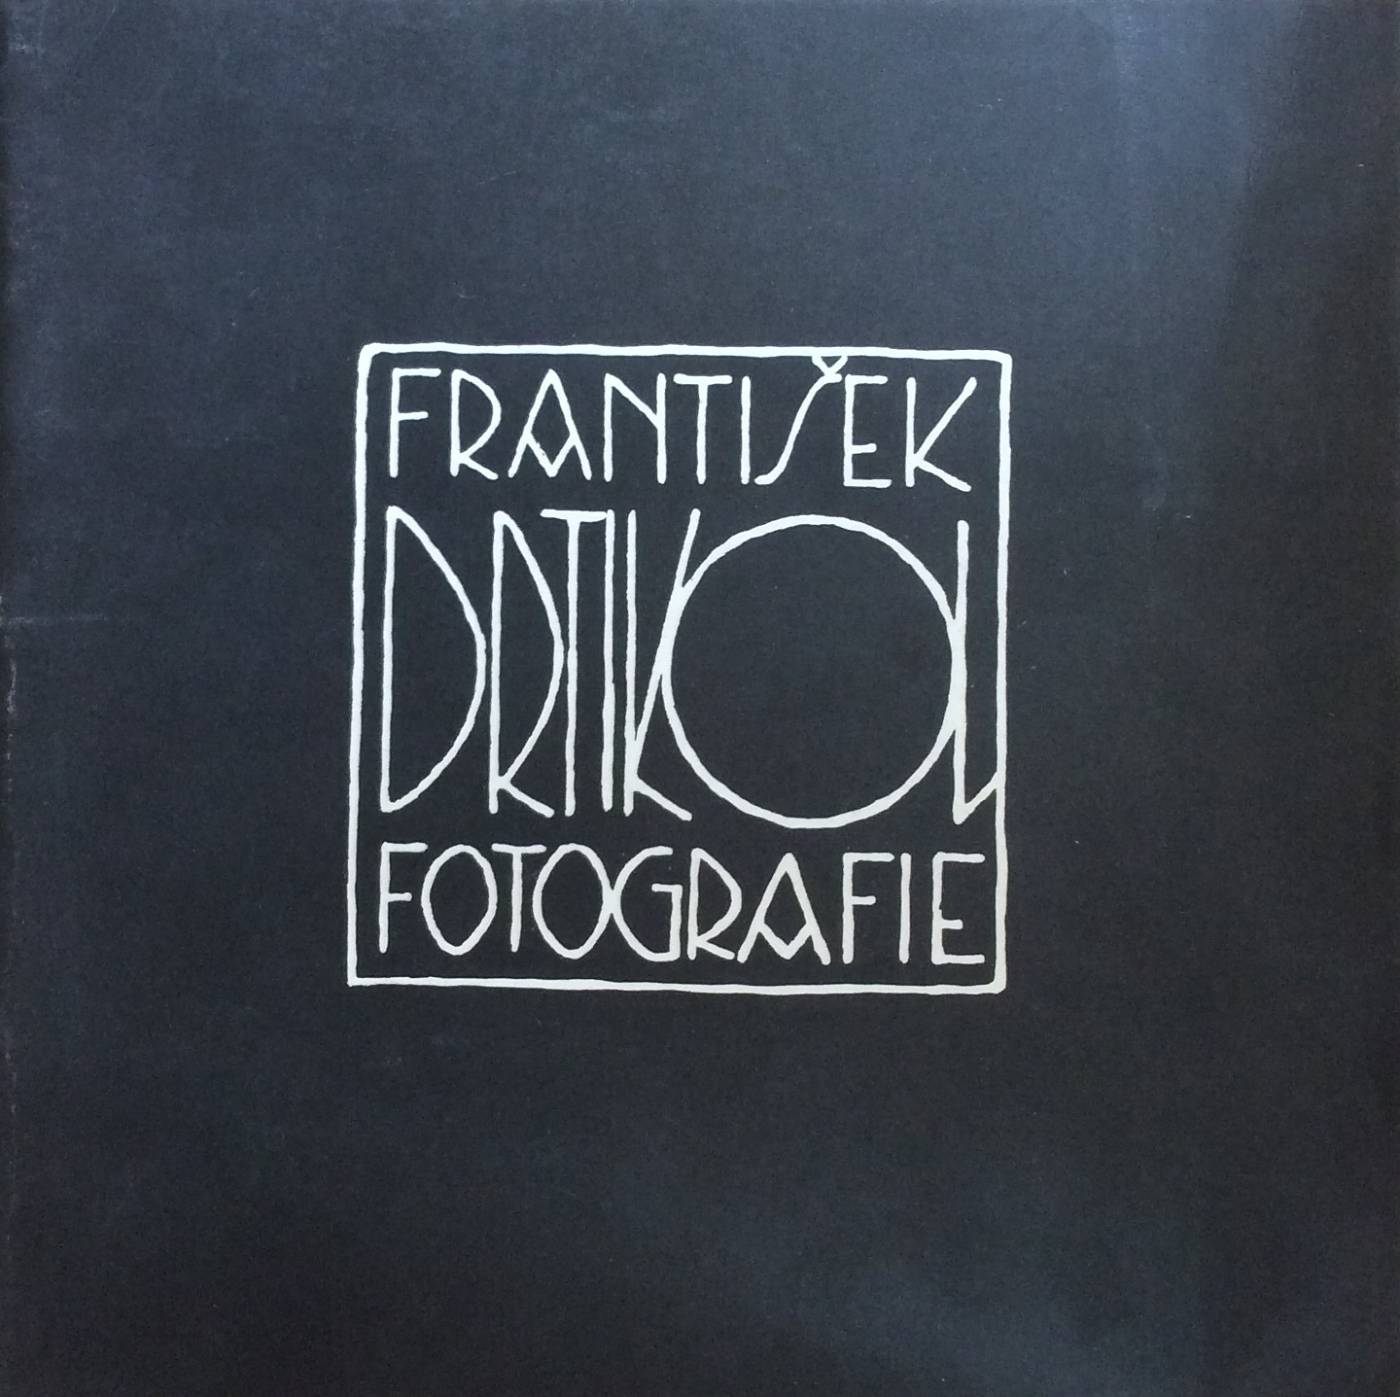 František Drtikol – fotografie